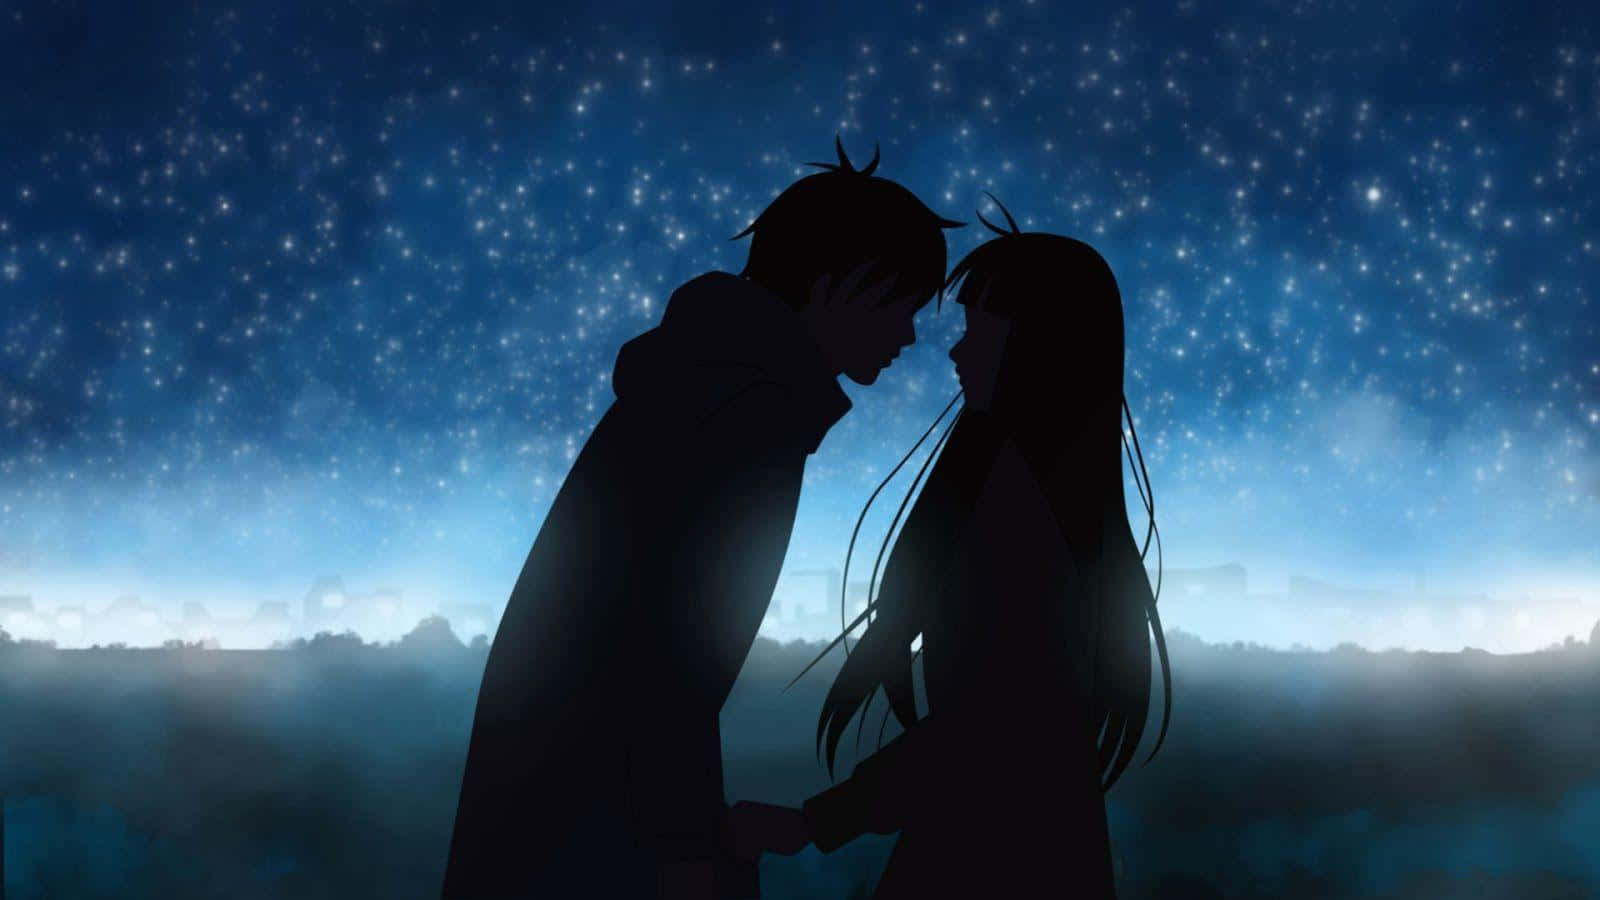 Et animepar kysser under stjernerne Wallpaper